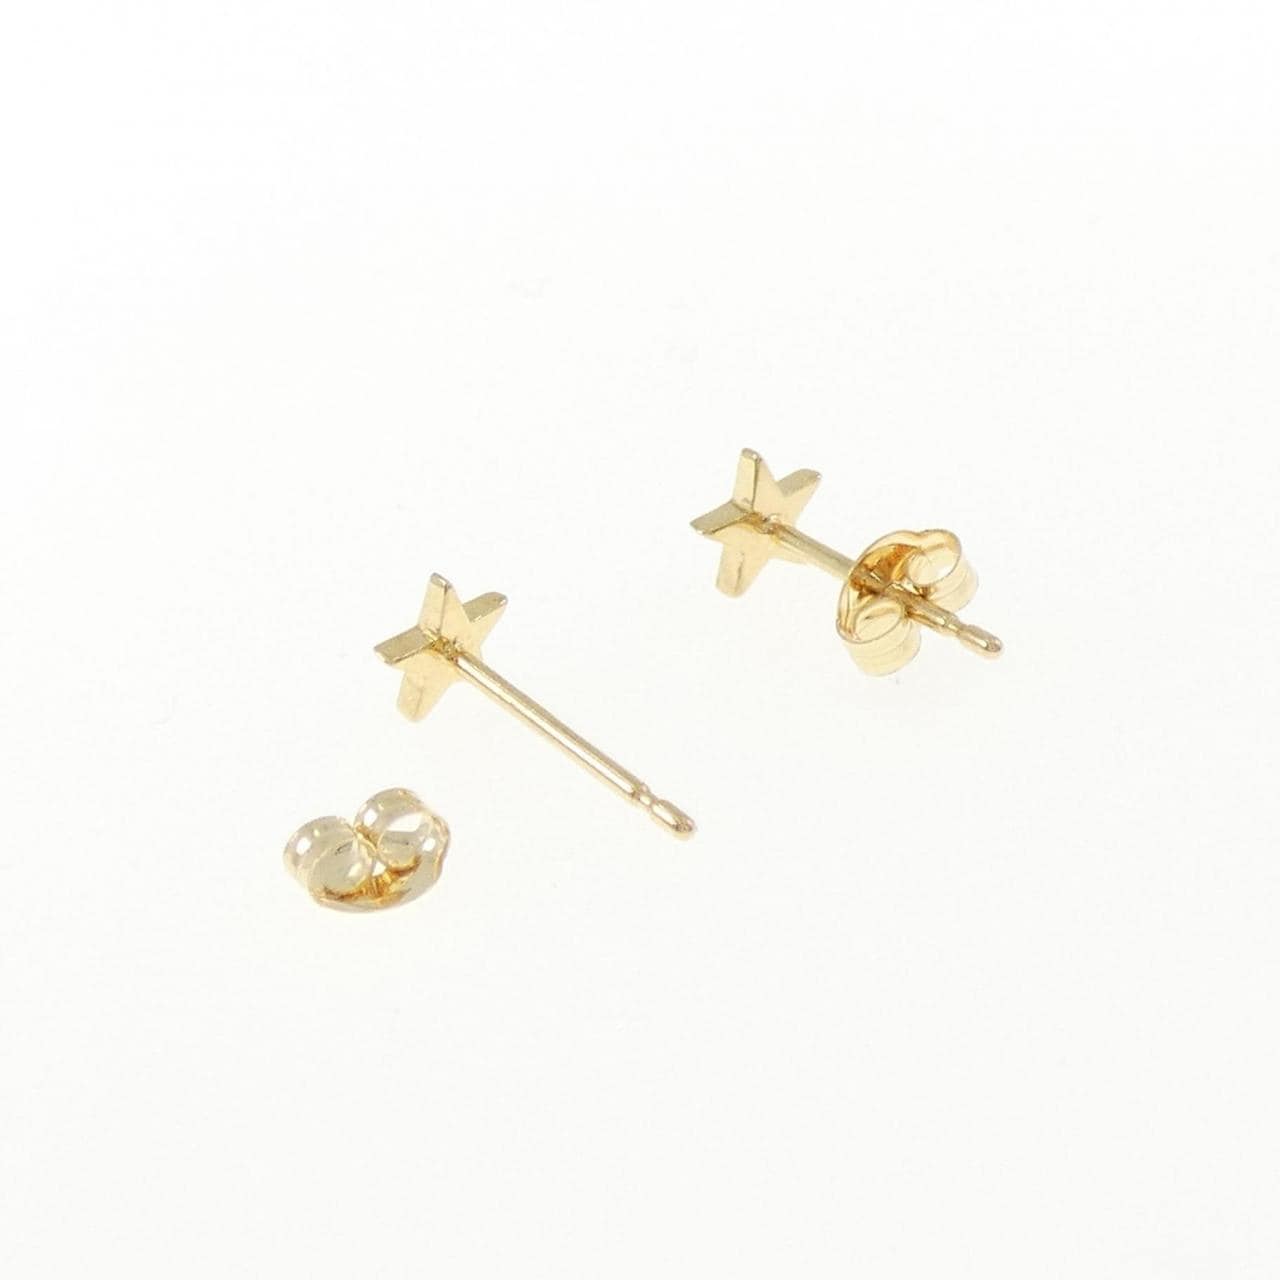 K18YG star earrings